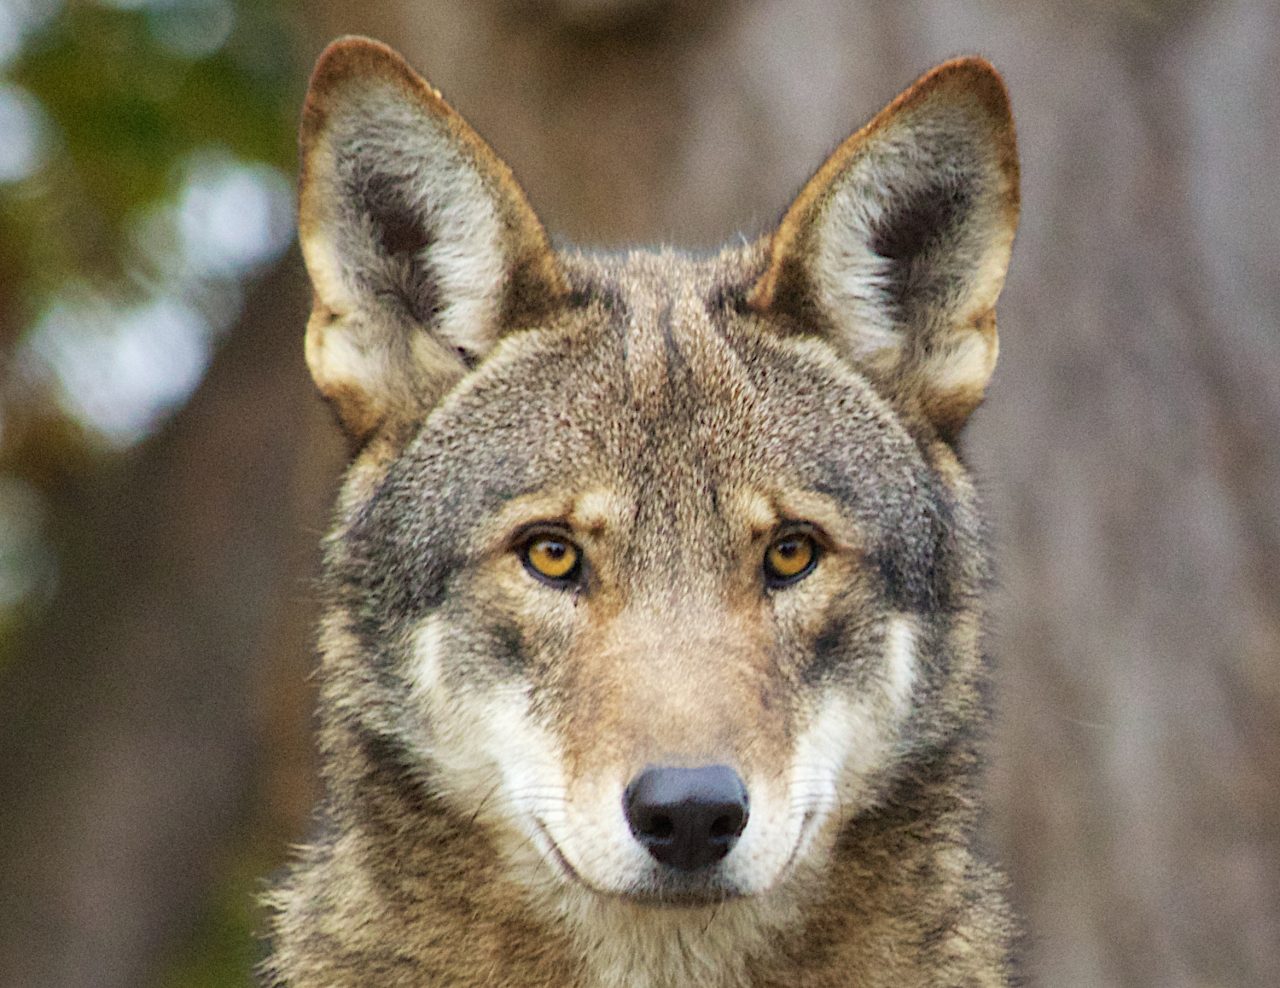 Eastern red wolf. Photo: B. Bartel, USFWS